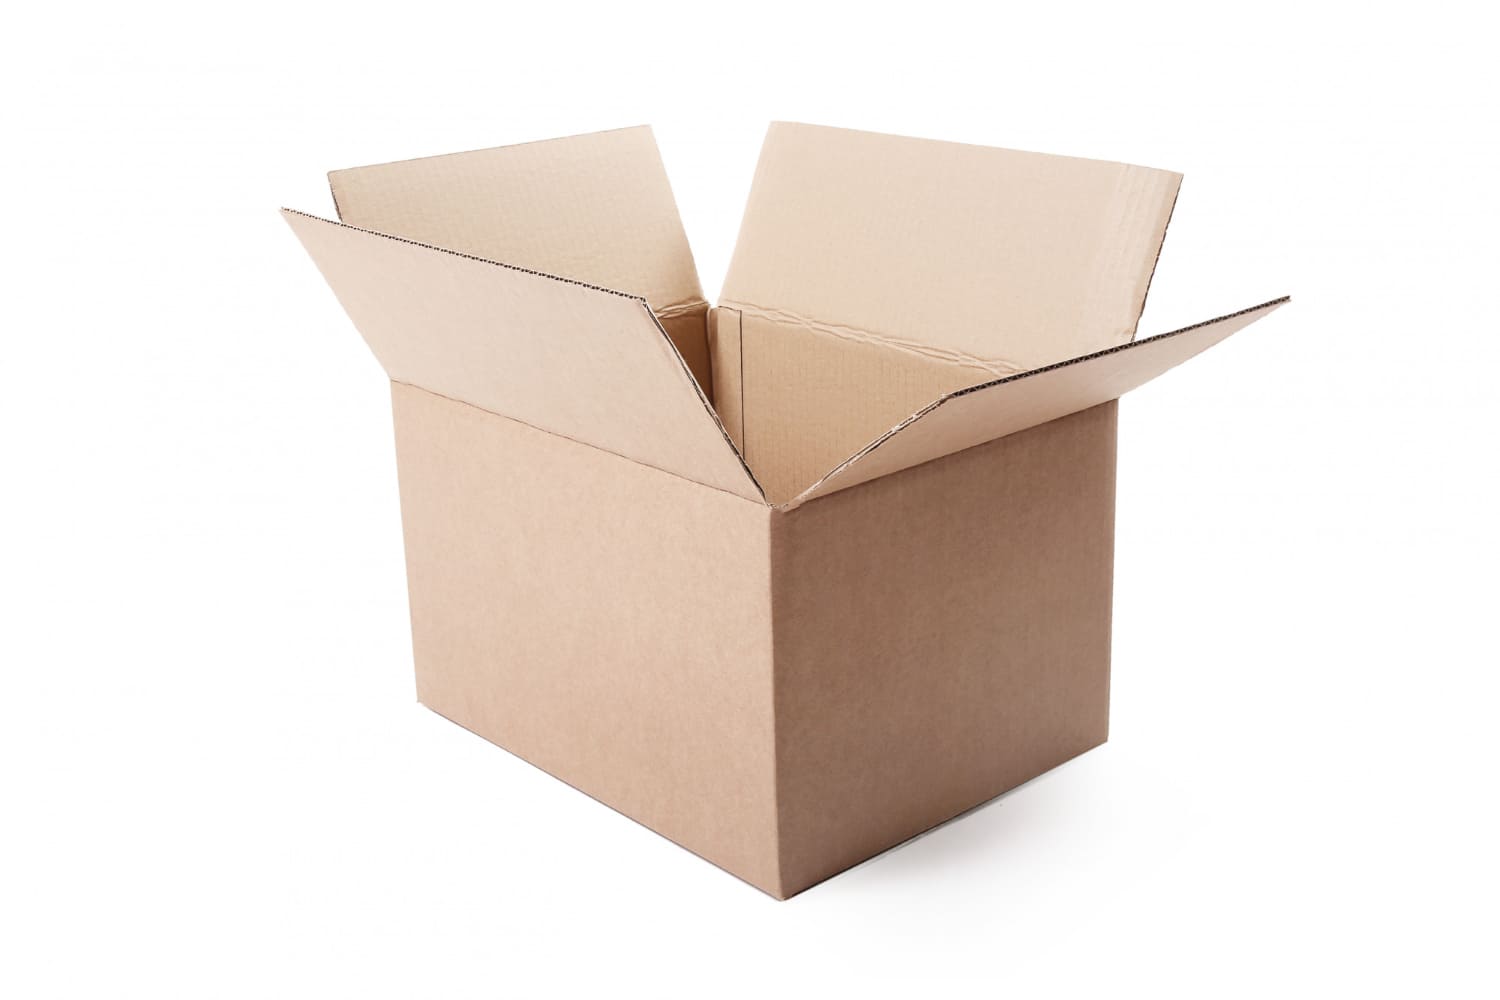 Karton klapowy: Wytrzymałe rozwiązanie pakowania i ochrony towarów